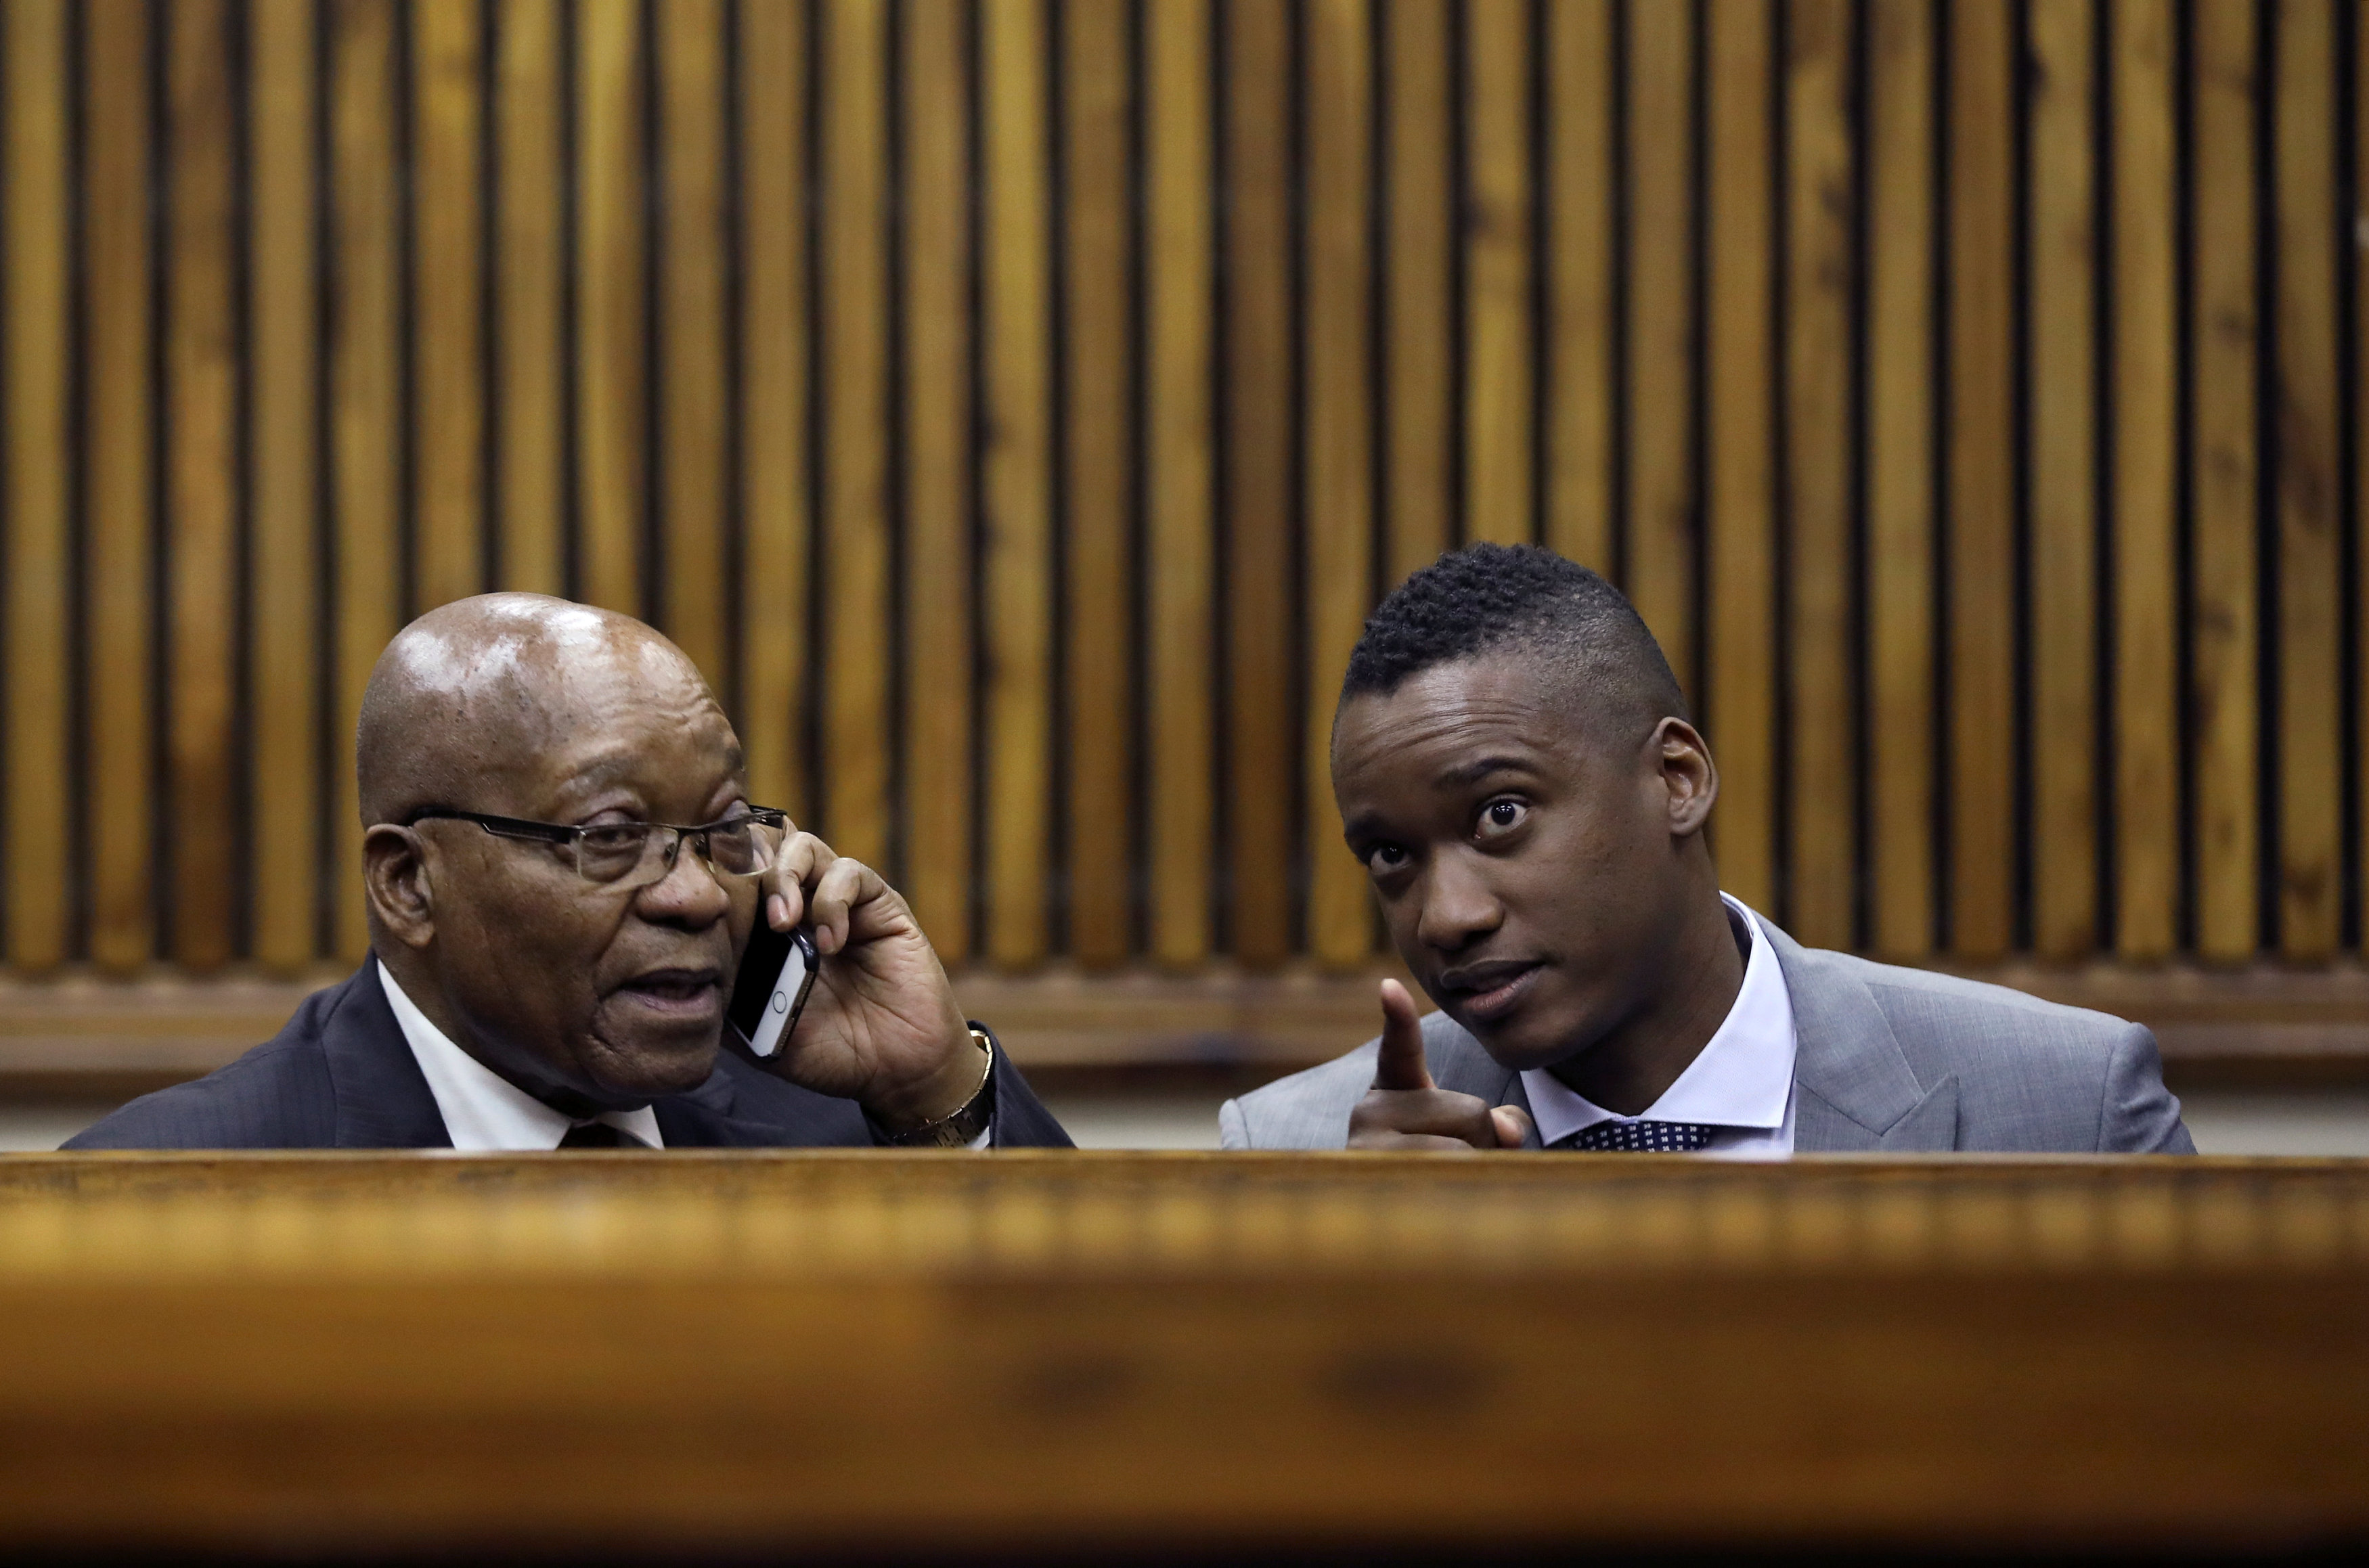  زوما يرد أثناء مثوله أمام المحكمة لابنه بجنوب إفريقيا